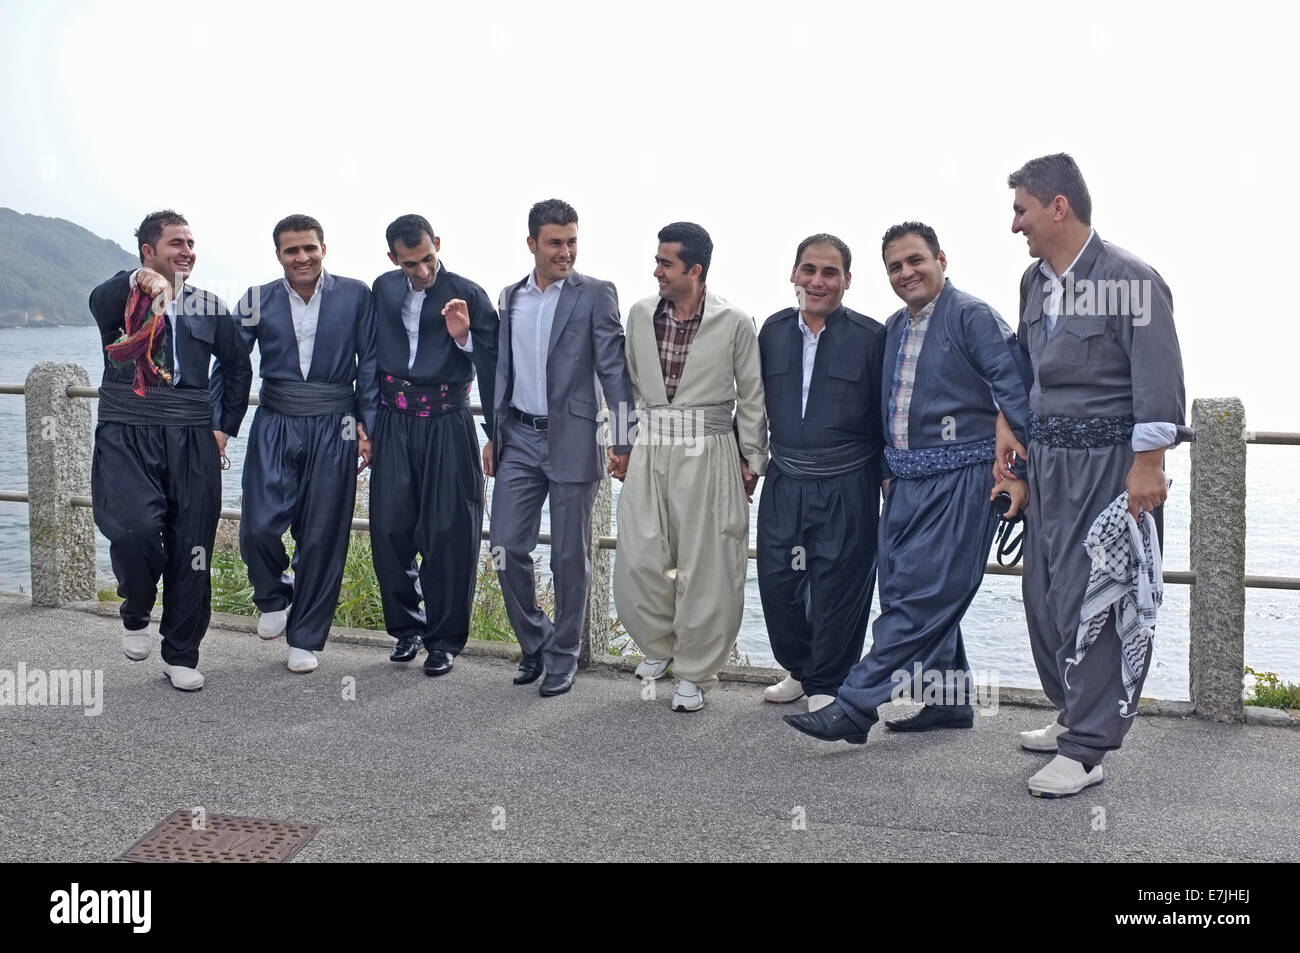 Eine Gruppe kurdischer Männer feiern ihren Freunden bevorstehenden Hochzeit. Bräutigam ist die am weitesten rechts in dieses Bild. Stockfoto